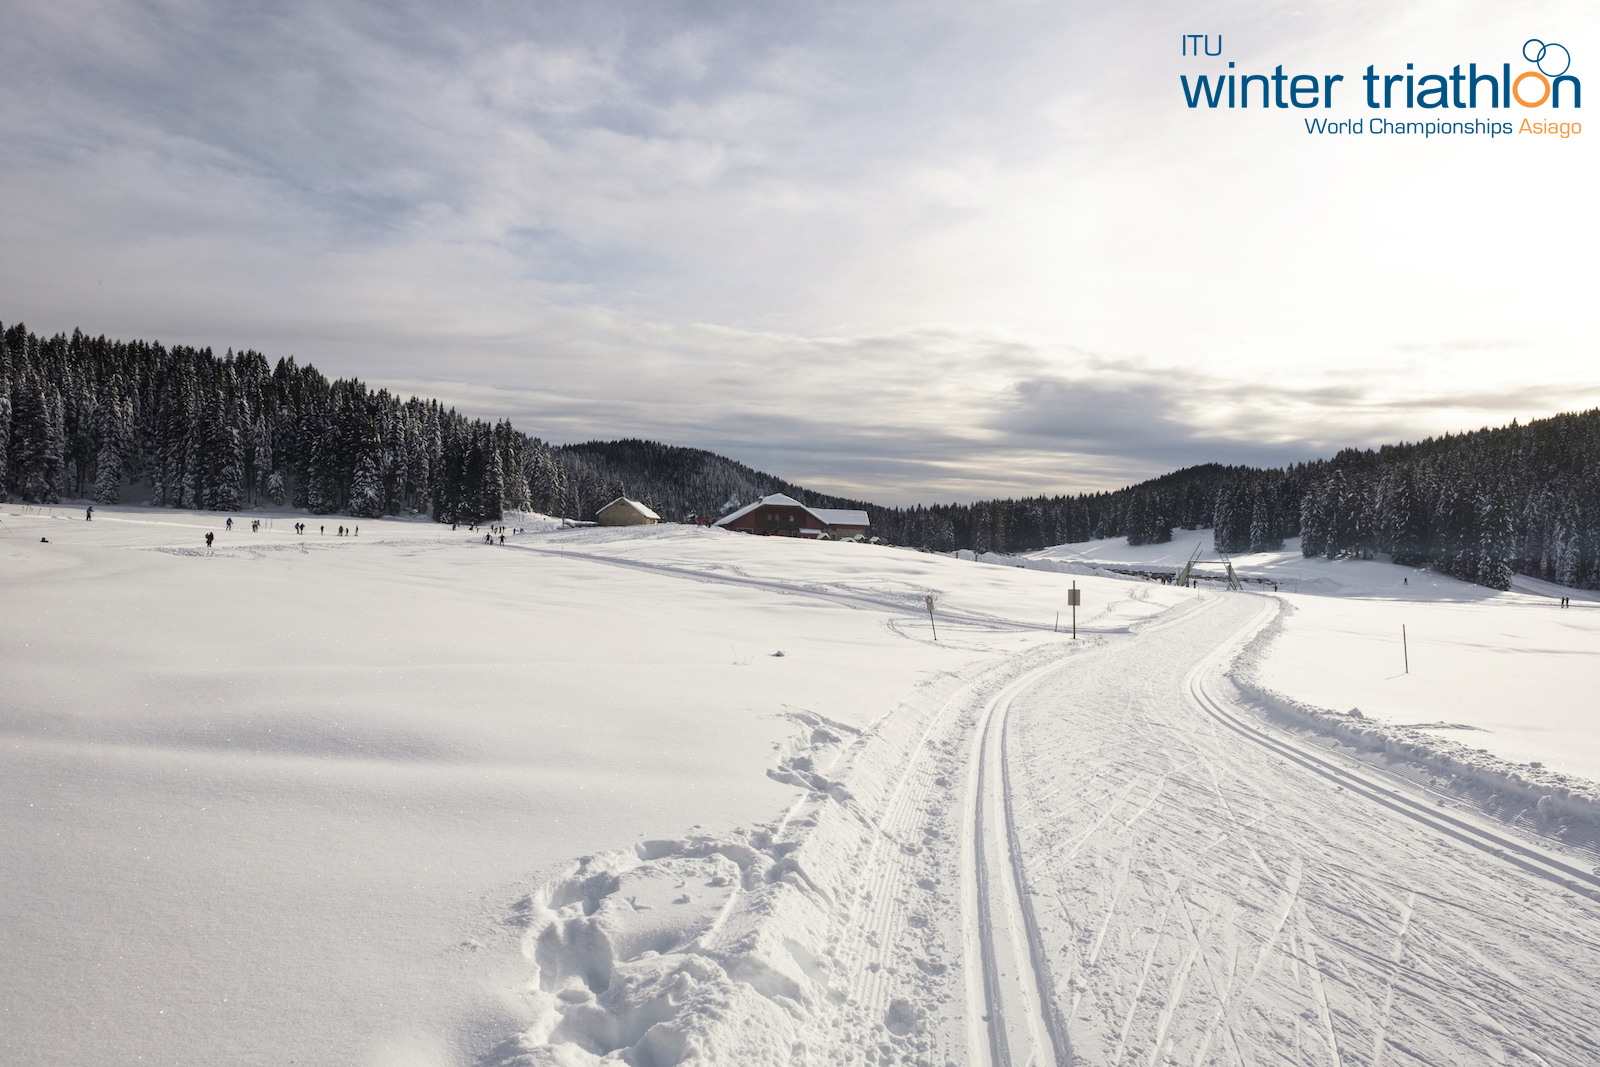 Mondiali Winter Triathlon: iscrizioni aperte fino al 28 gennaio